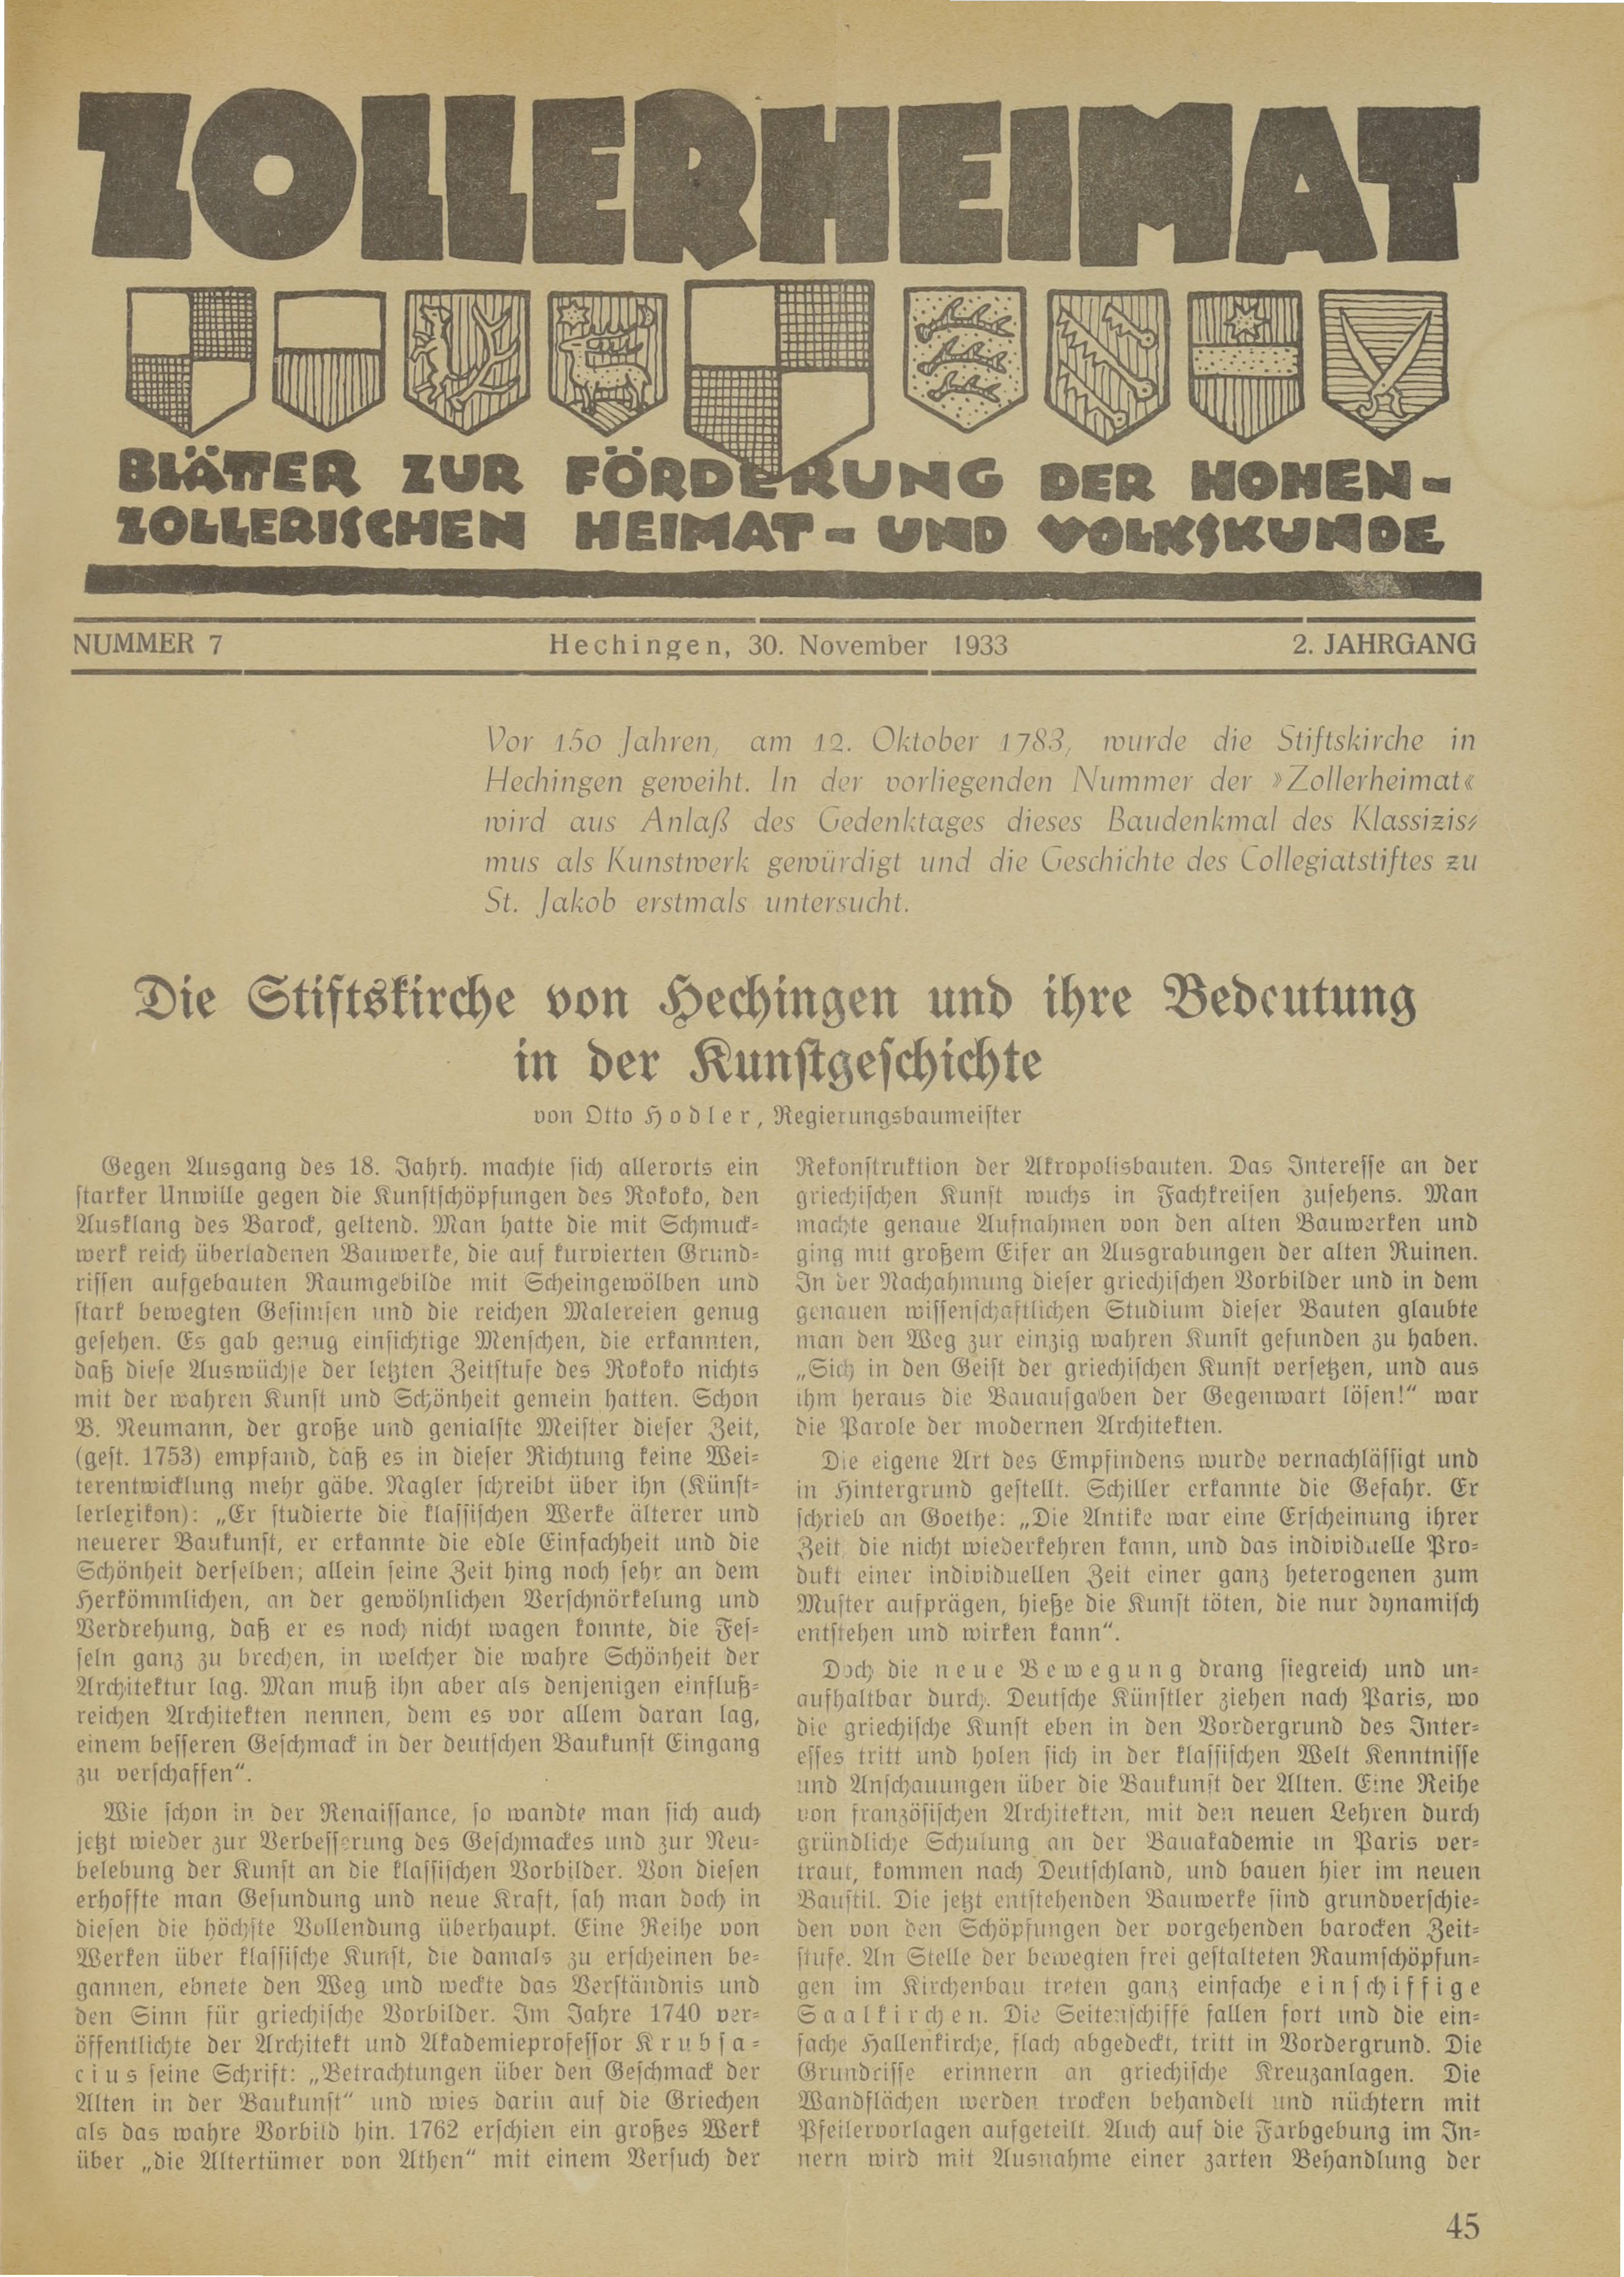                     Ansehen Bd. 2 Nr. 7 (1933): Zollerheimat
                